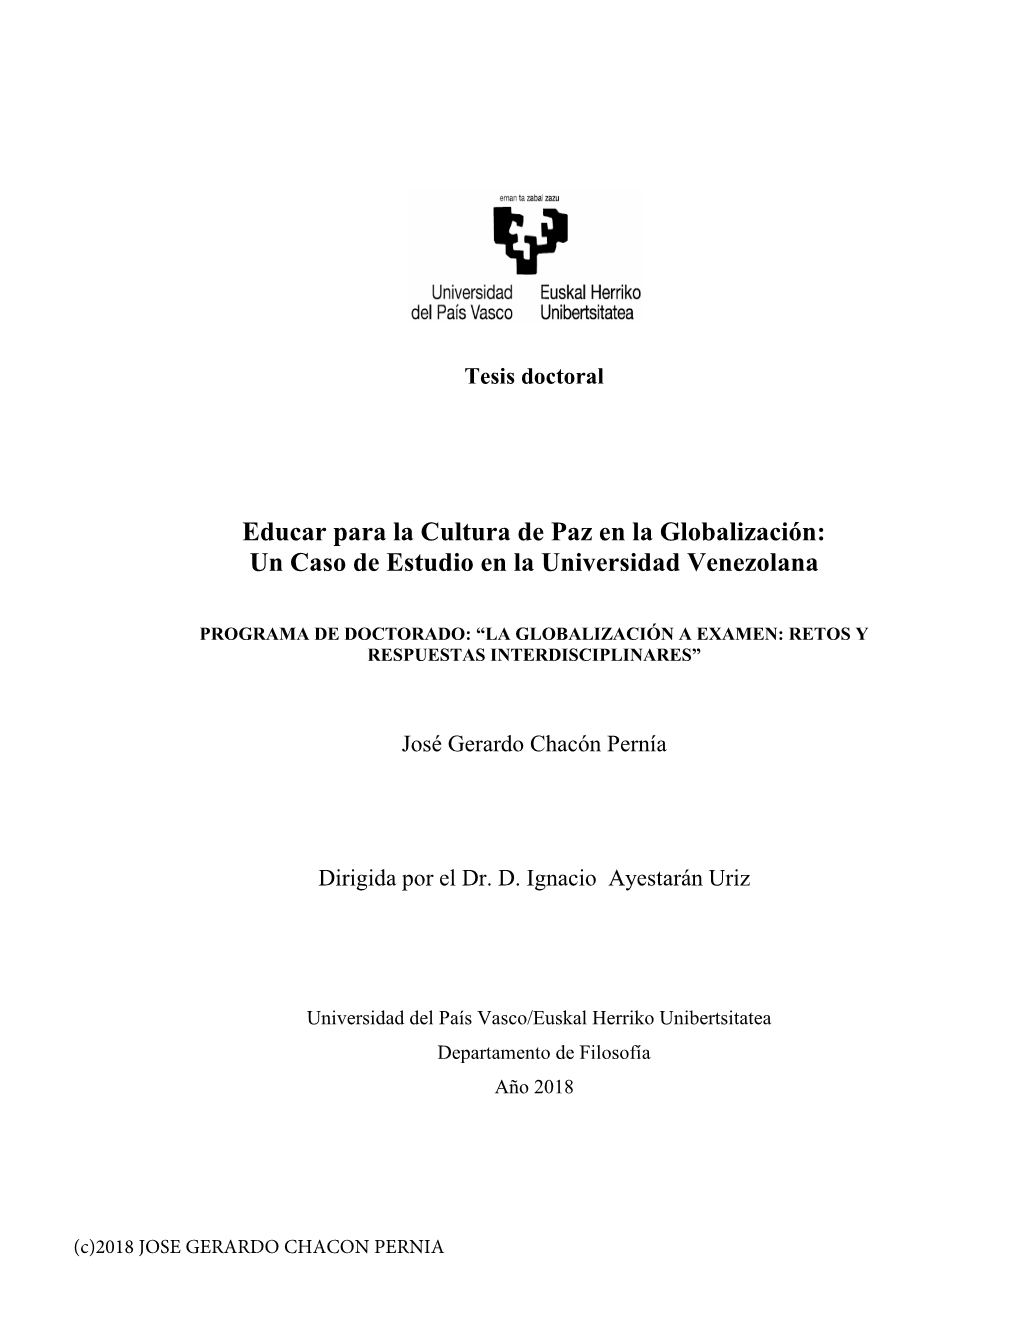 Educar Para La Cultura De Paz En La Globalización: Un Caso De Estudio En La Universidad Venezolana